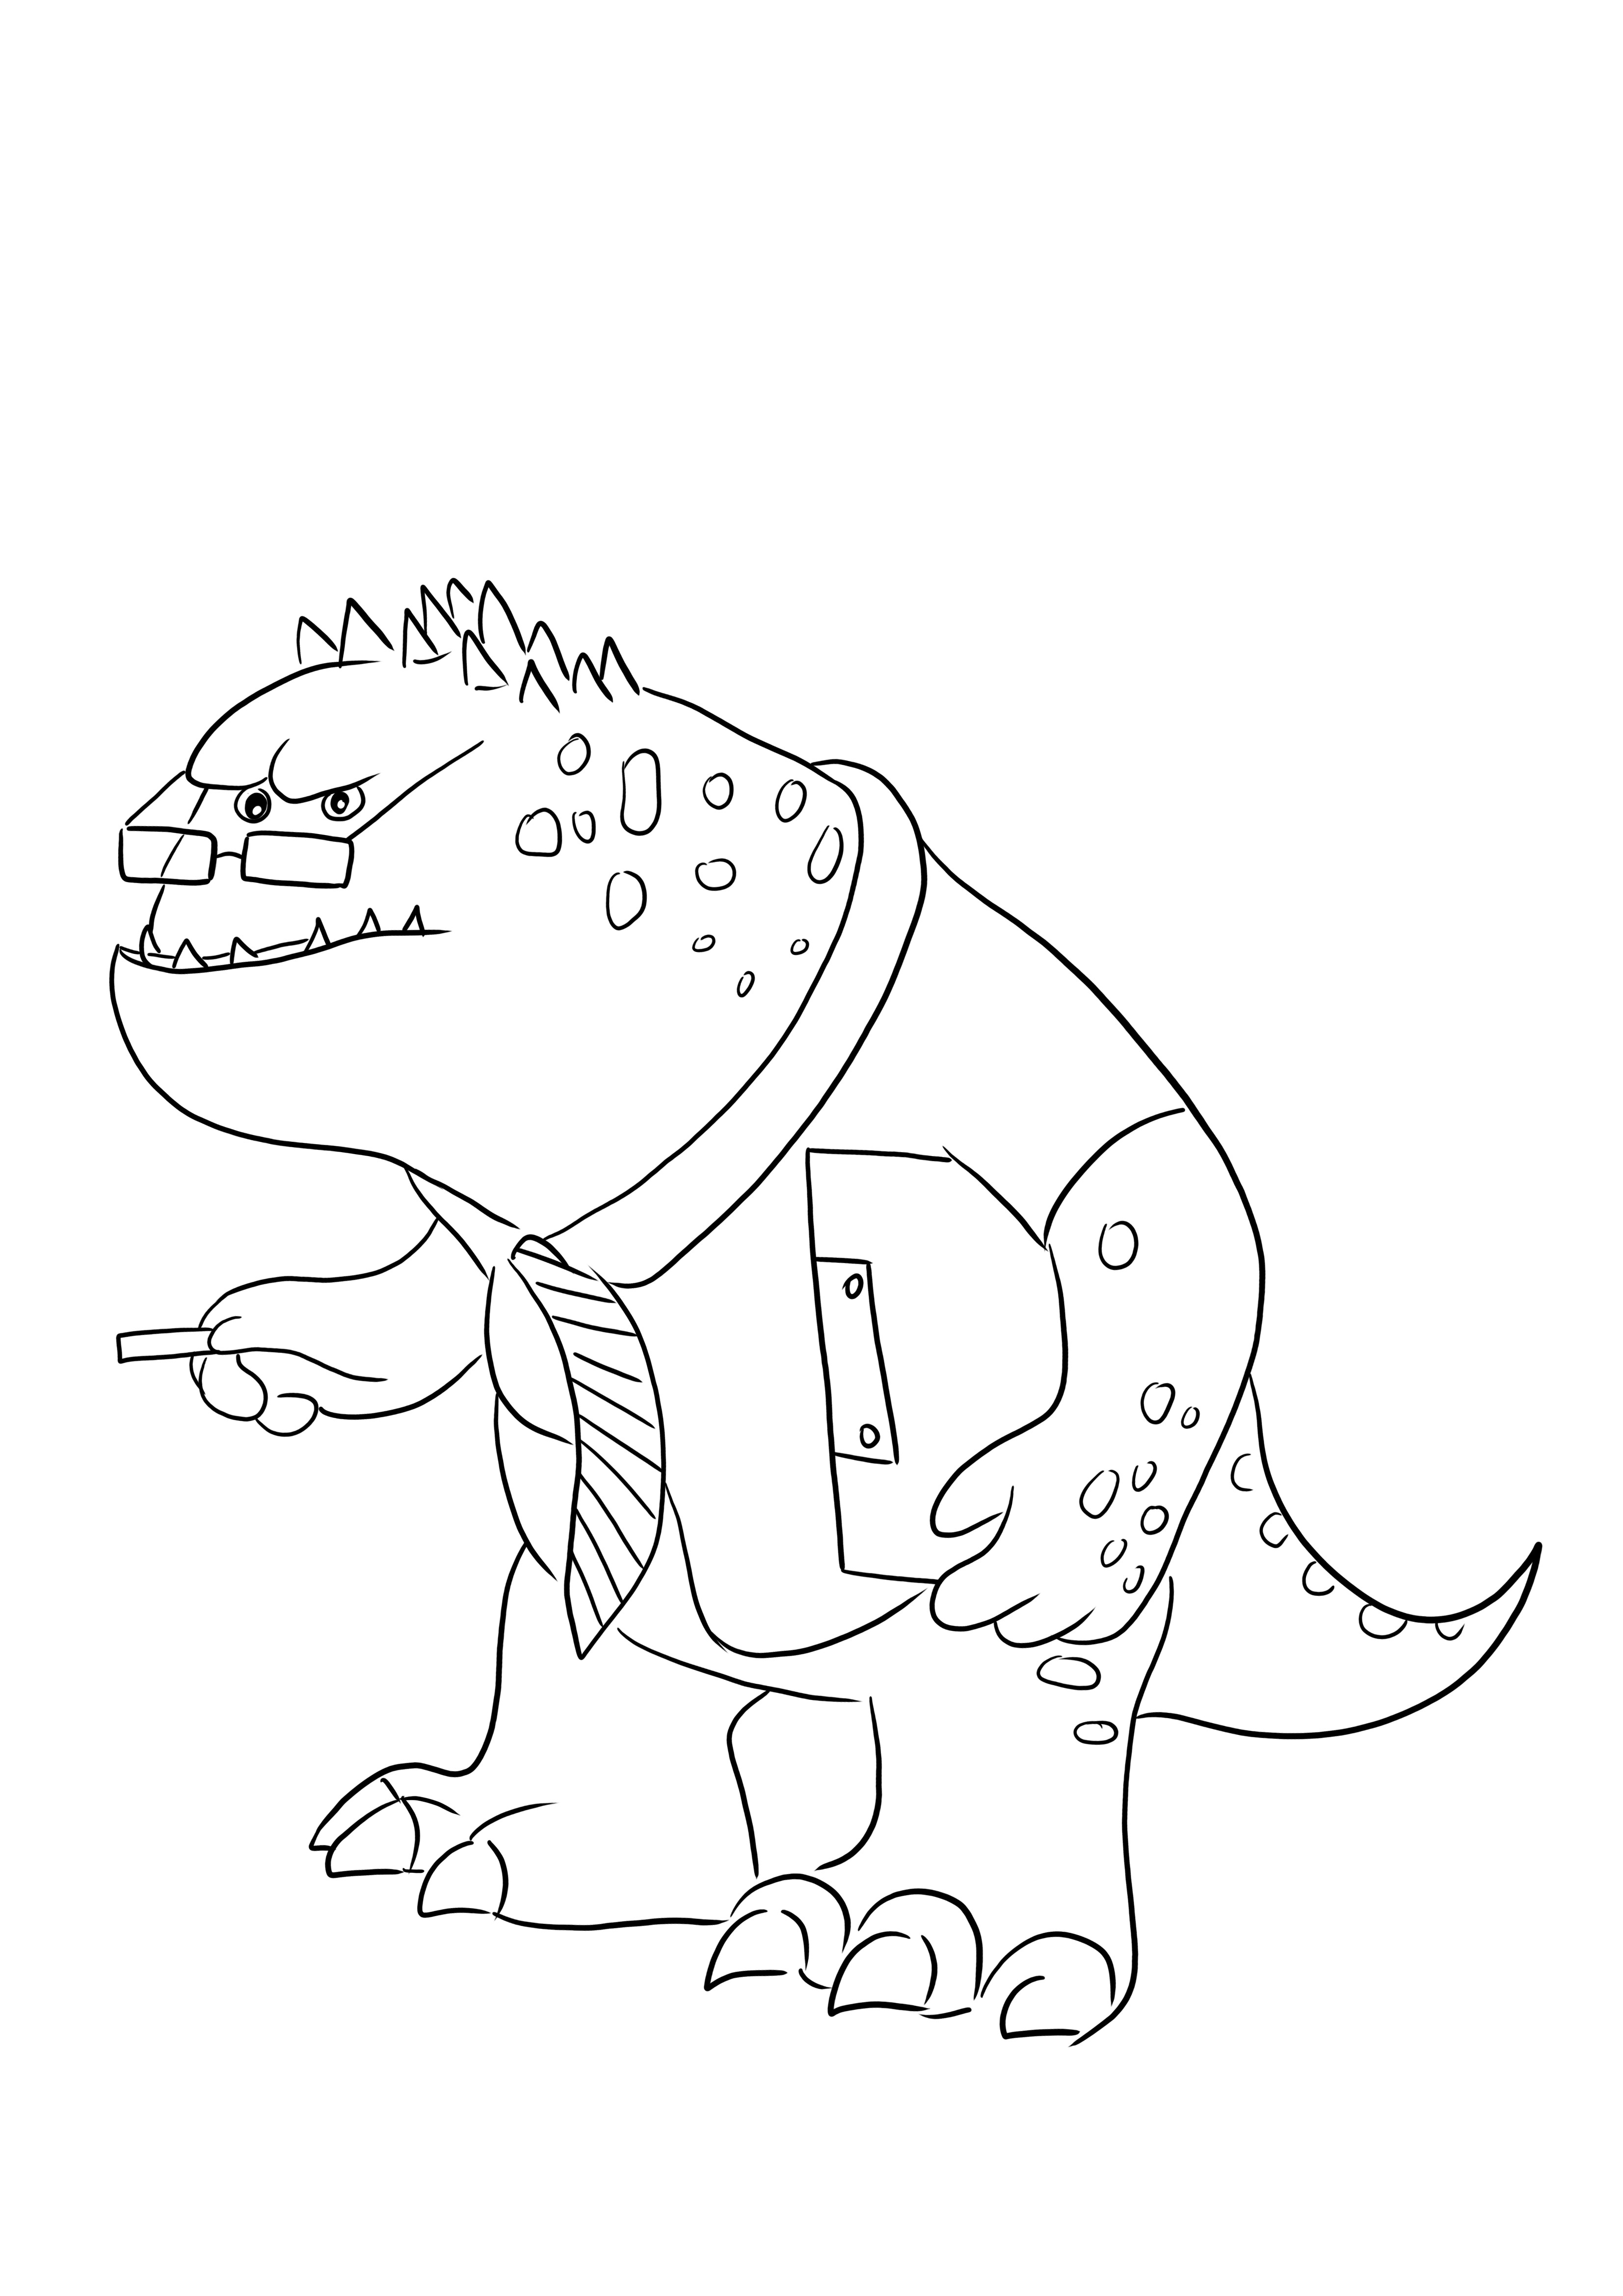 Strict Professor Knight - een kleurplaat met een grappig personage van Monsters Inc om gratis te downloaden kleurplaat